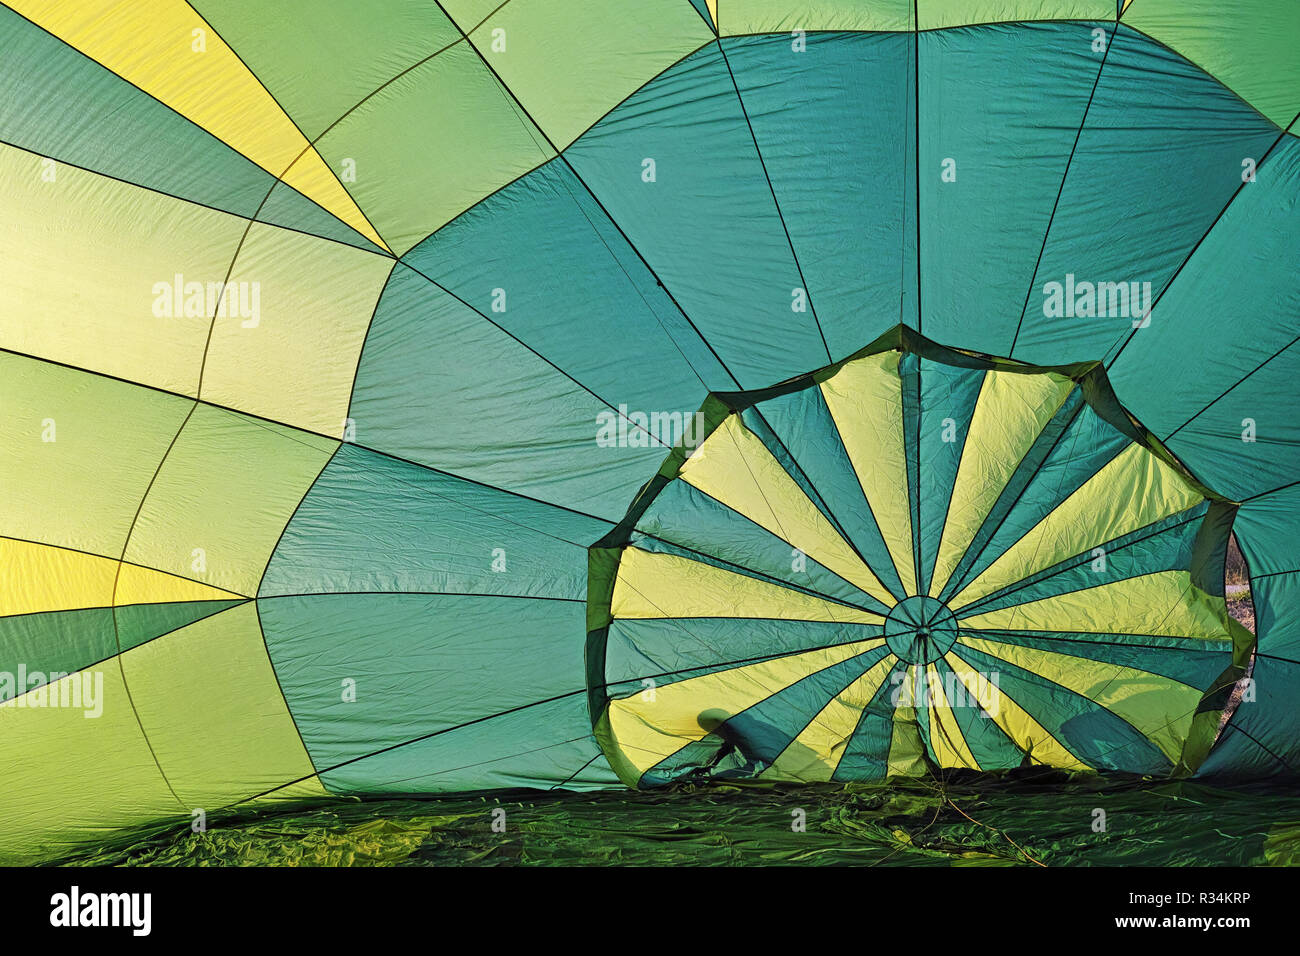 L'intérieur d'un ballon à air chaud dans les premières phases de l'inflation Banque D'Images